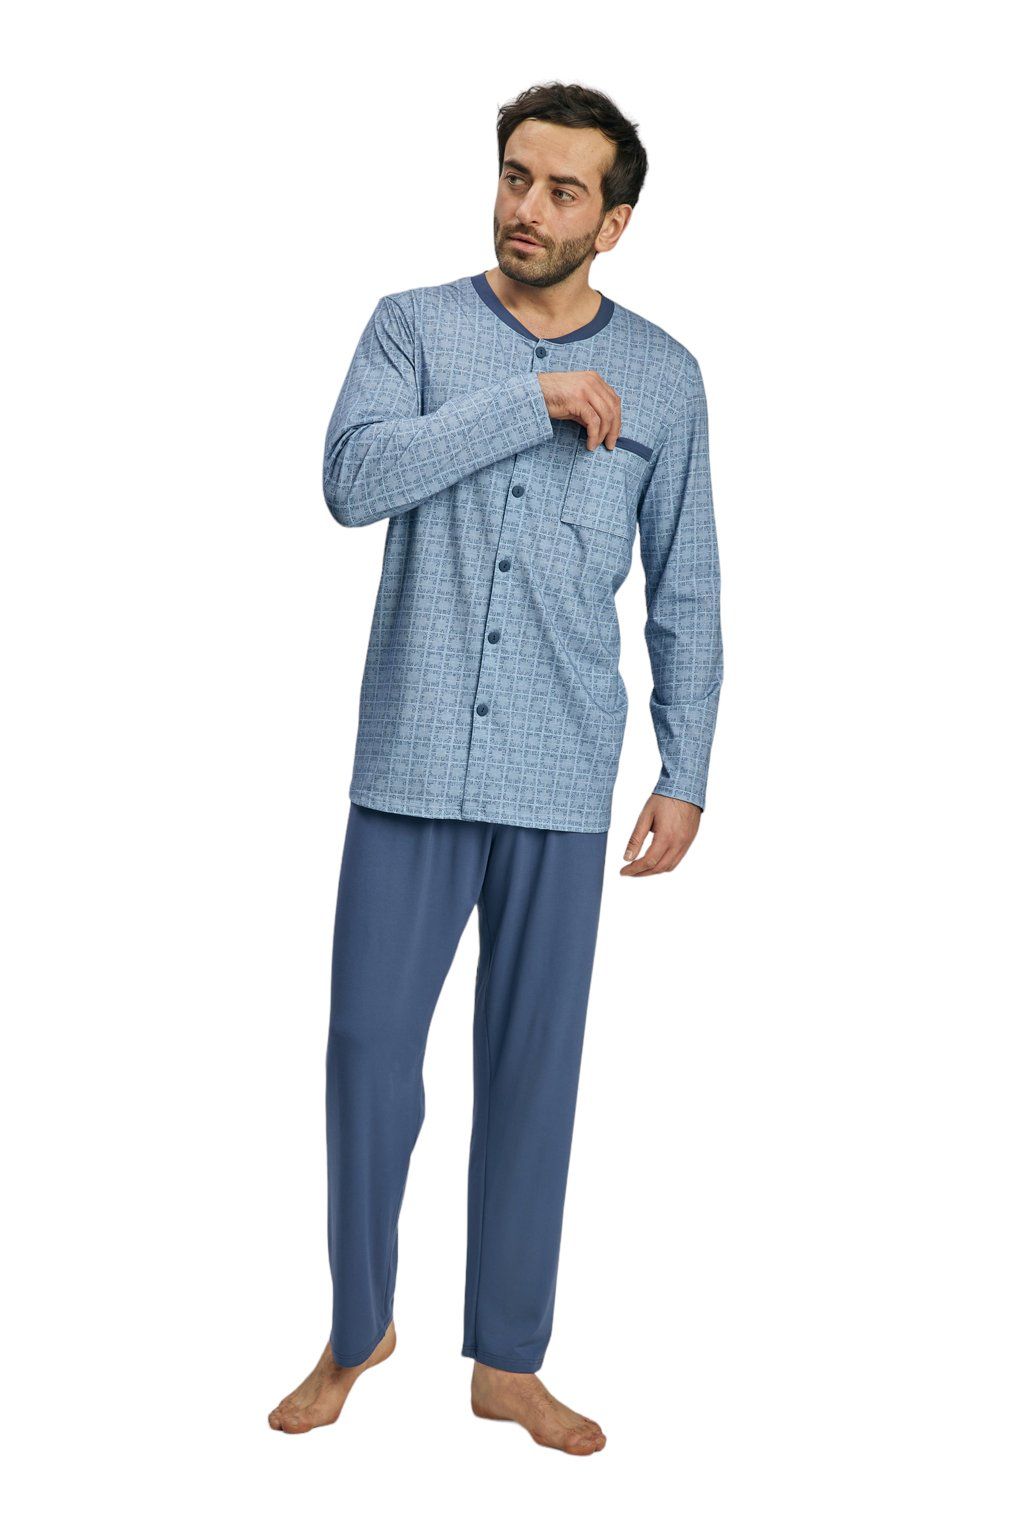 Pánské pyžamo s dlouhým rukávem, 204140 416, modrá - Velikost M Wadima